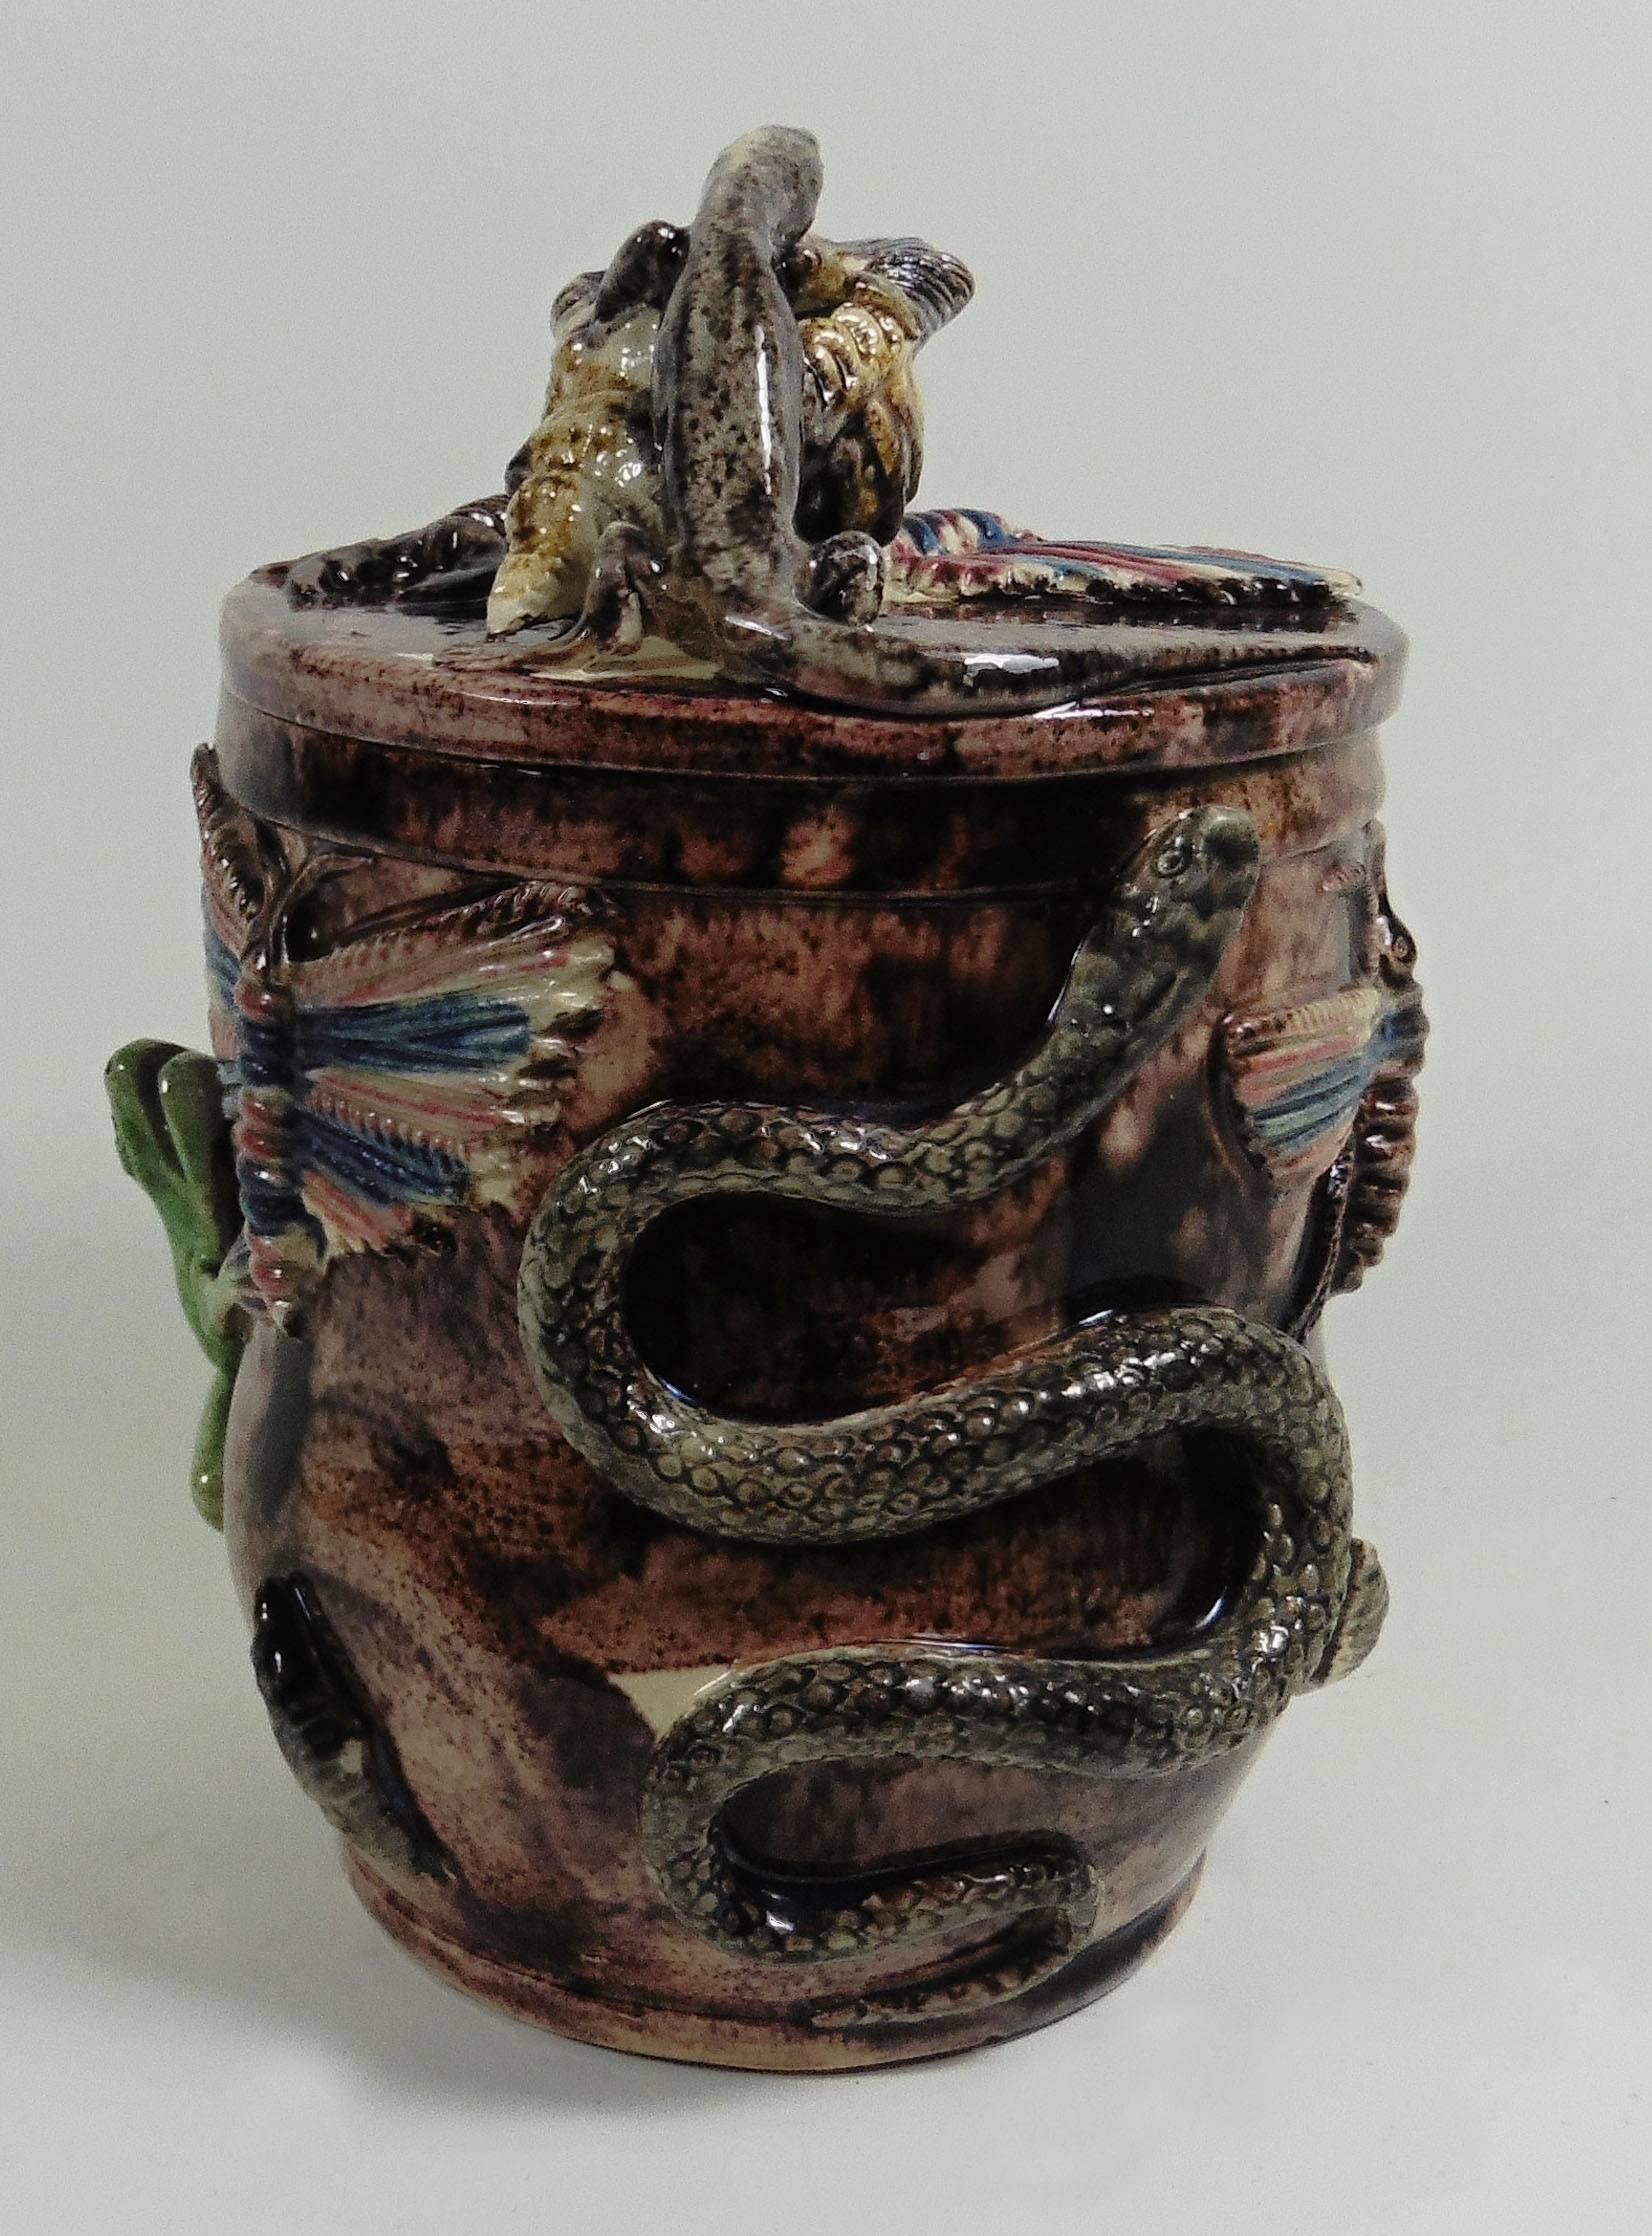 Grande jarre à tabac Palissy portugaise attribuée à Manuel Mafra.
Ce pot à tabac est décoré en haut-relief d'une grenouille, de grands papillons, d'insectes, de coquillages, d'un serpent, d'un crocodile, sur le couvercle d'un grand coquillage